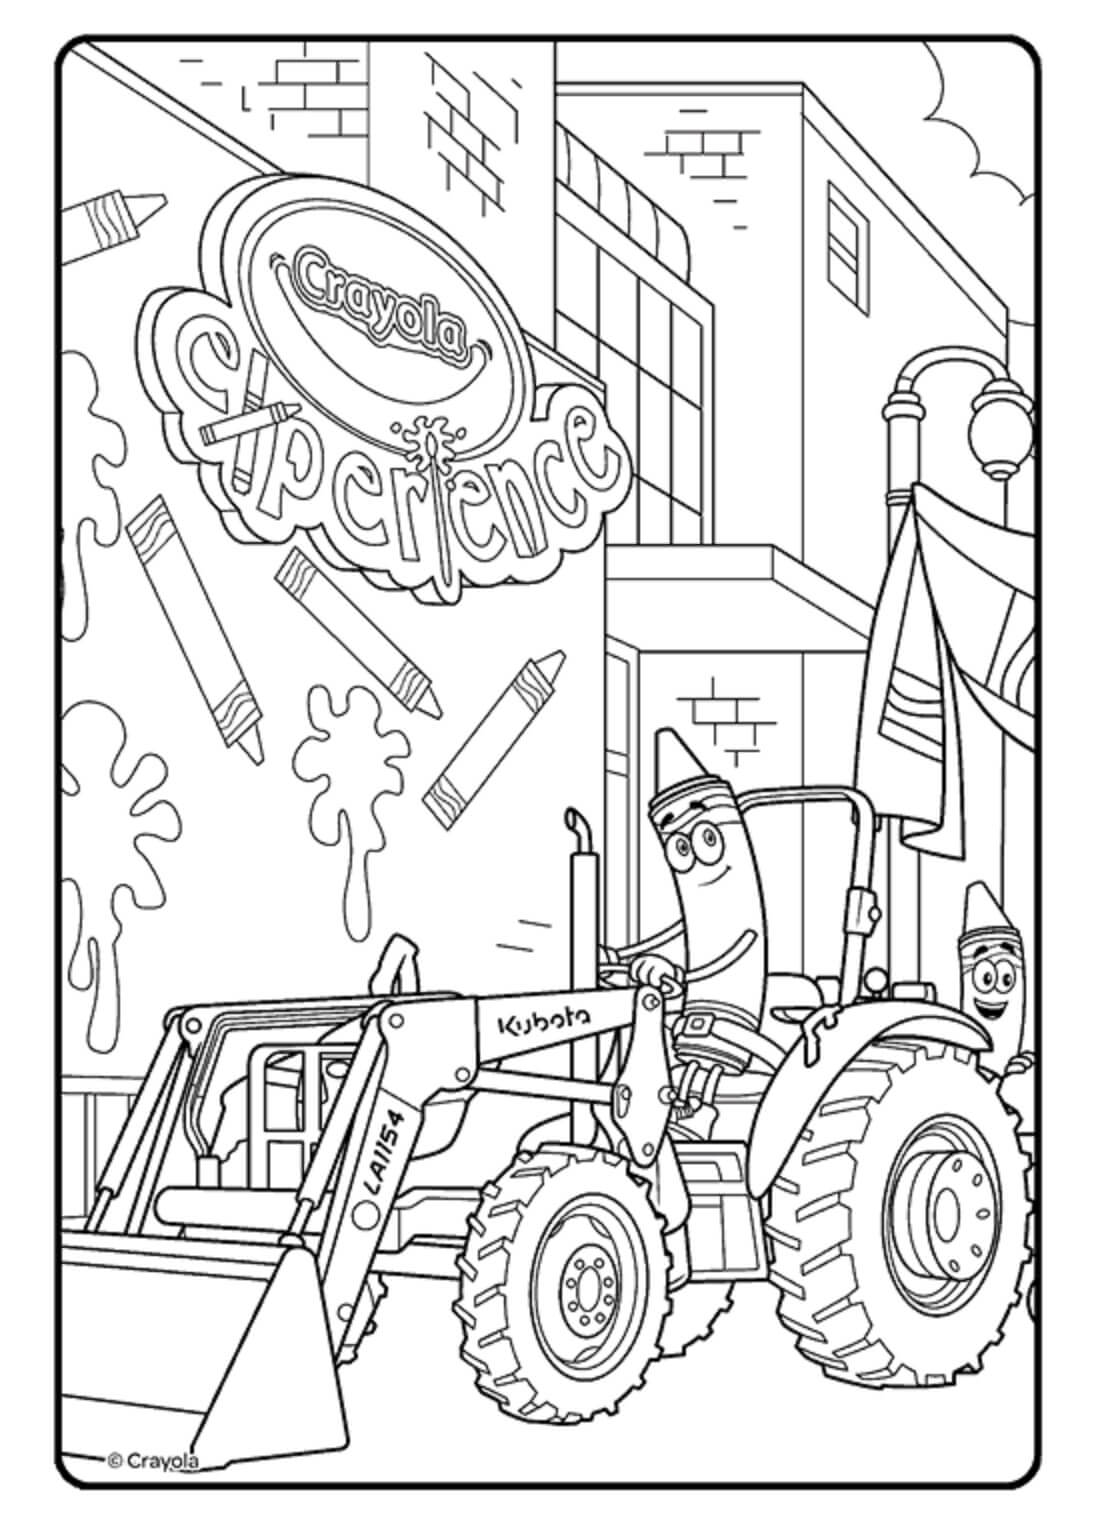 Cartoon Crayola rijdende tractor